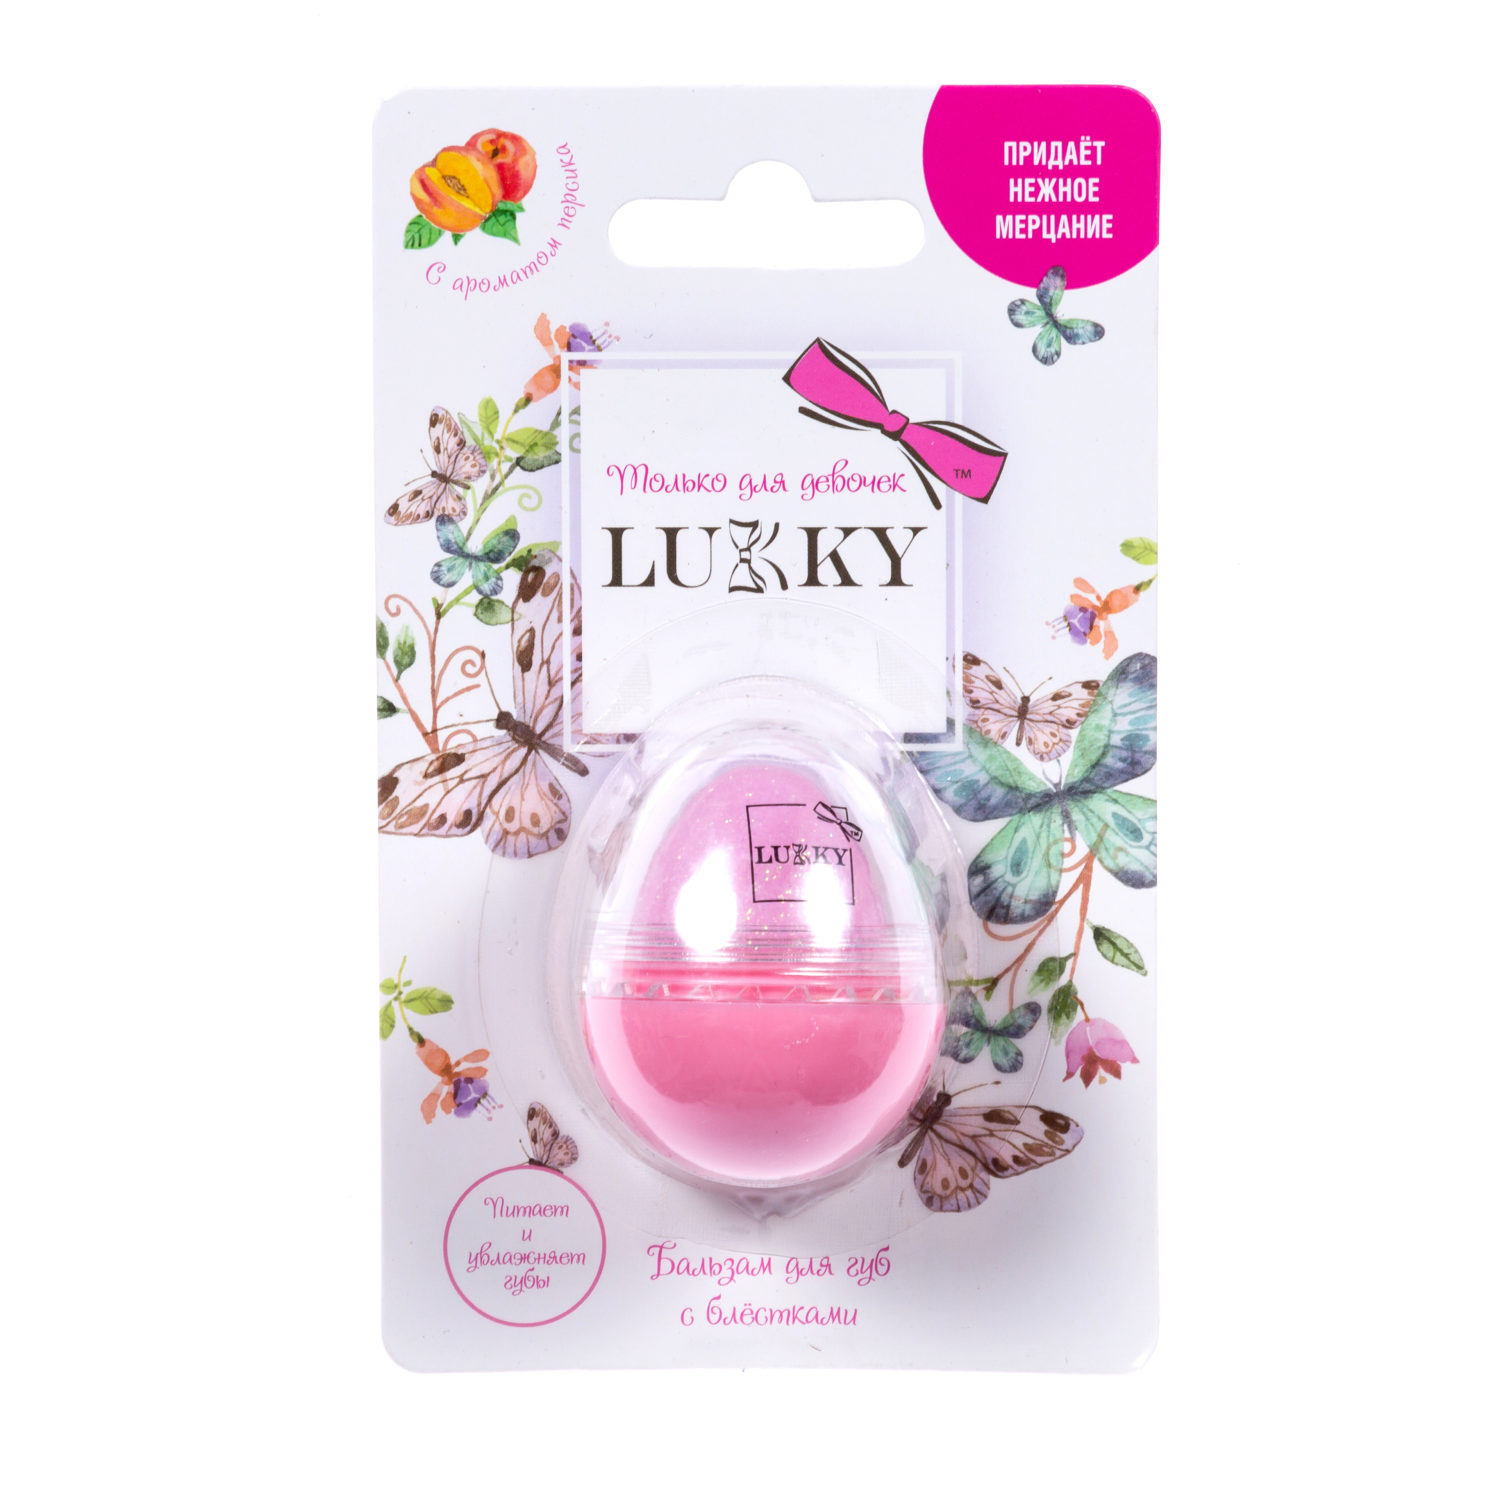 Бальзам с блестками для губ - яйцо Lukky - Розовая нежность, с ароматом персика, 10 г  